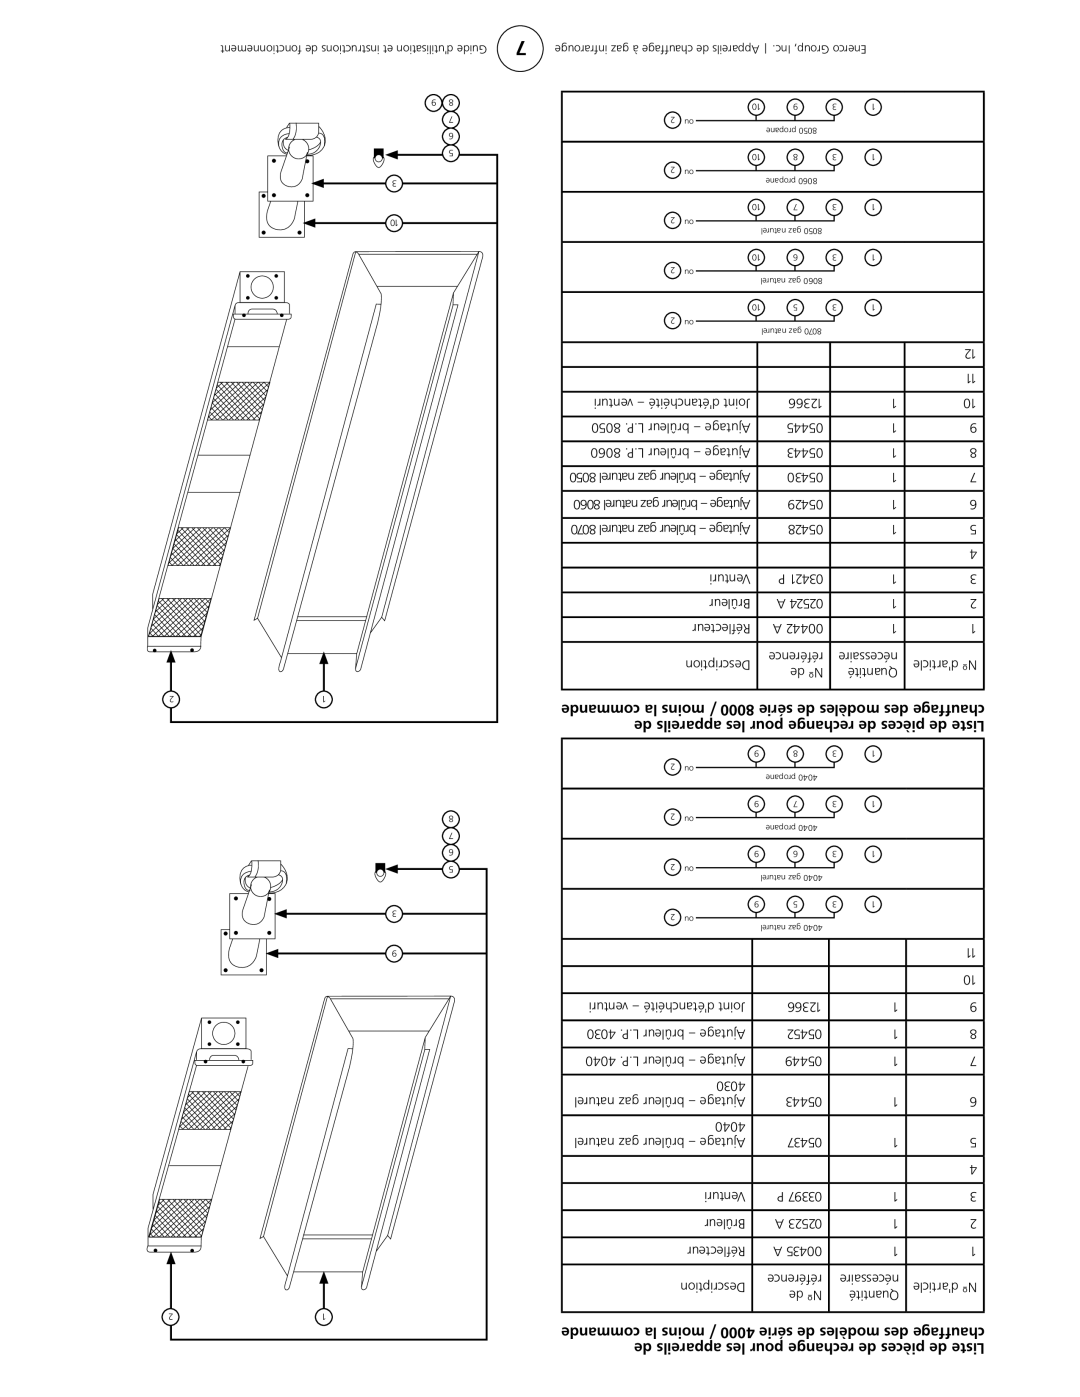 Enerco HS9100S, HS4040, HS8060, HS9120 owner manual référence, nécessaire, de appareils les pour rechange de pièces de isteL 